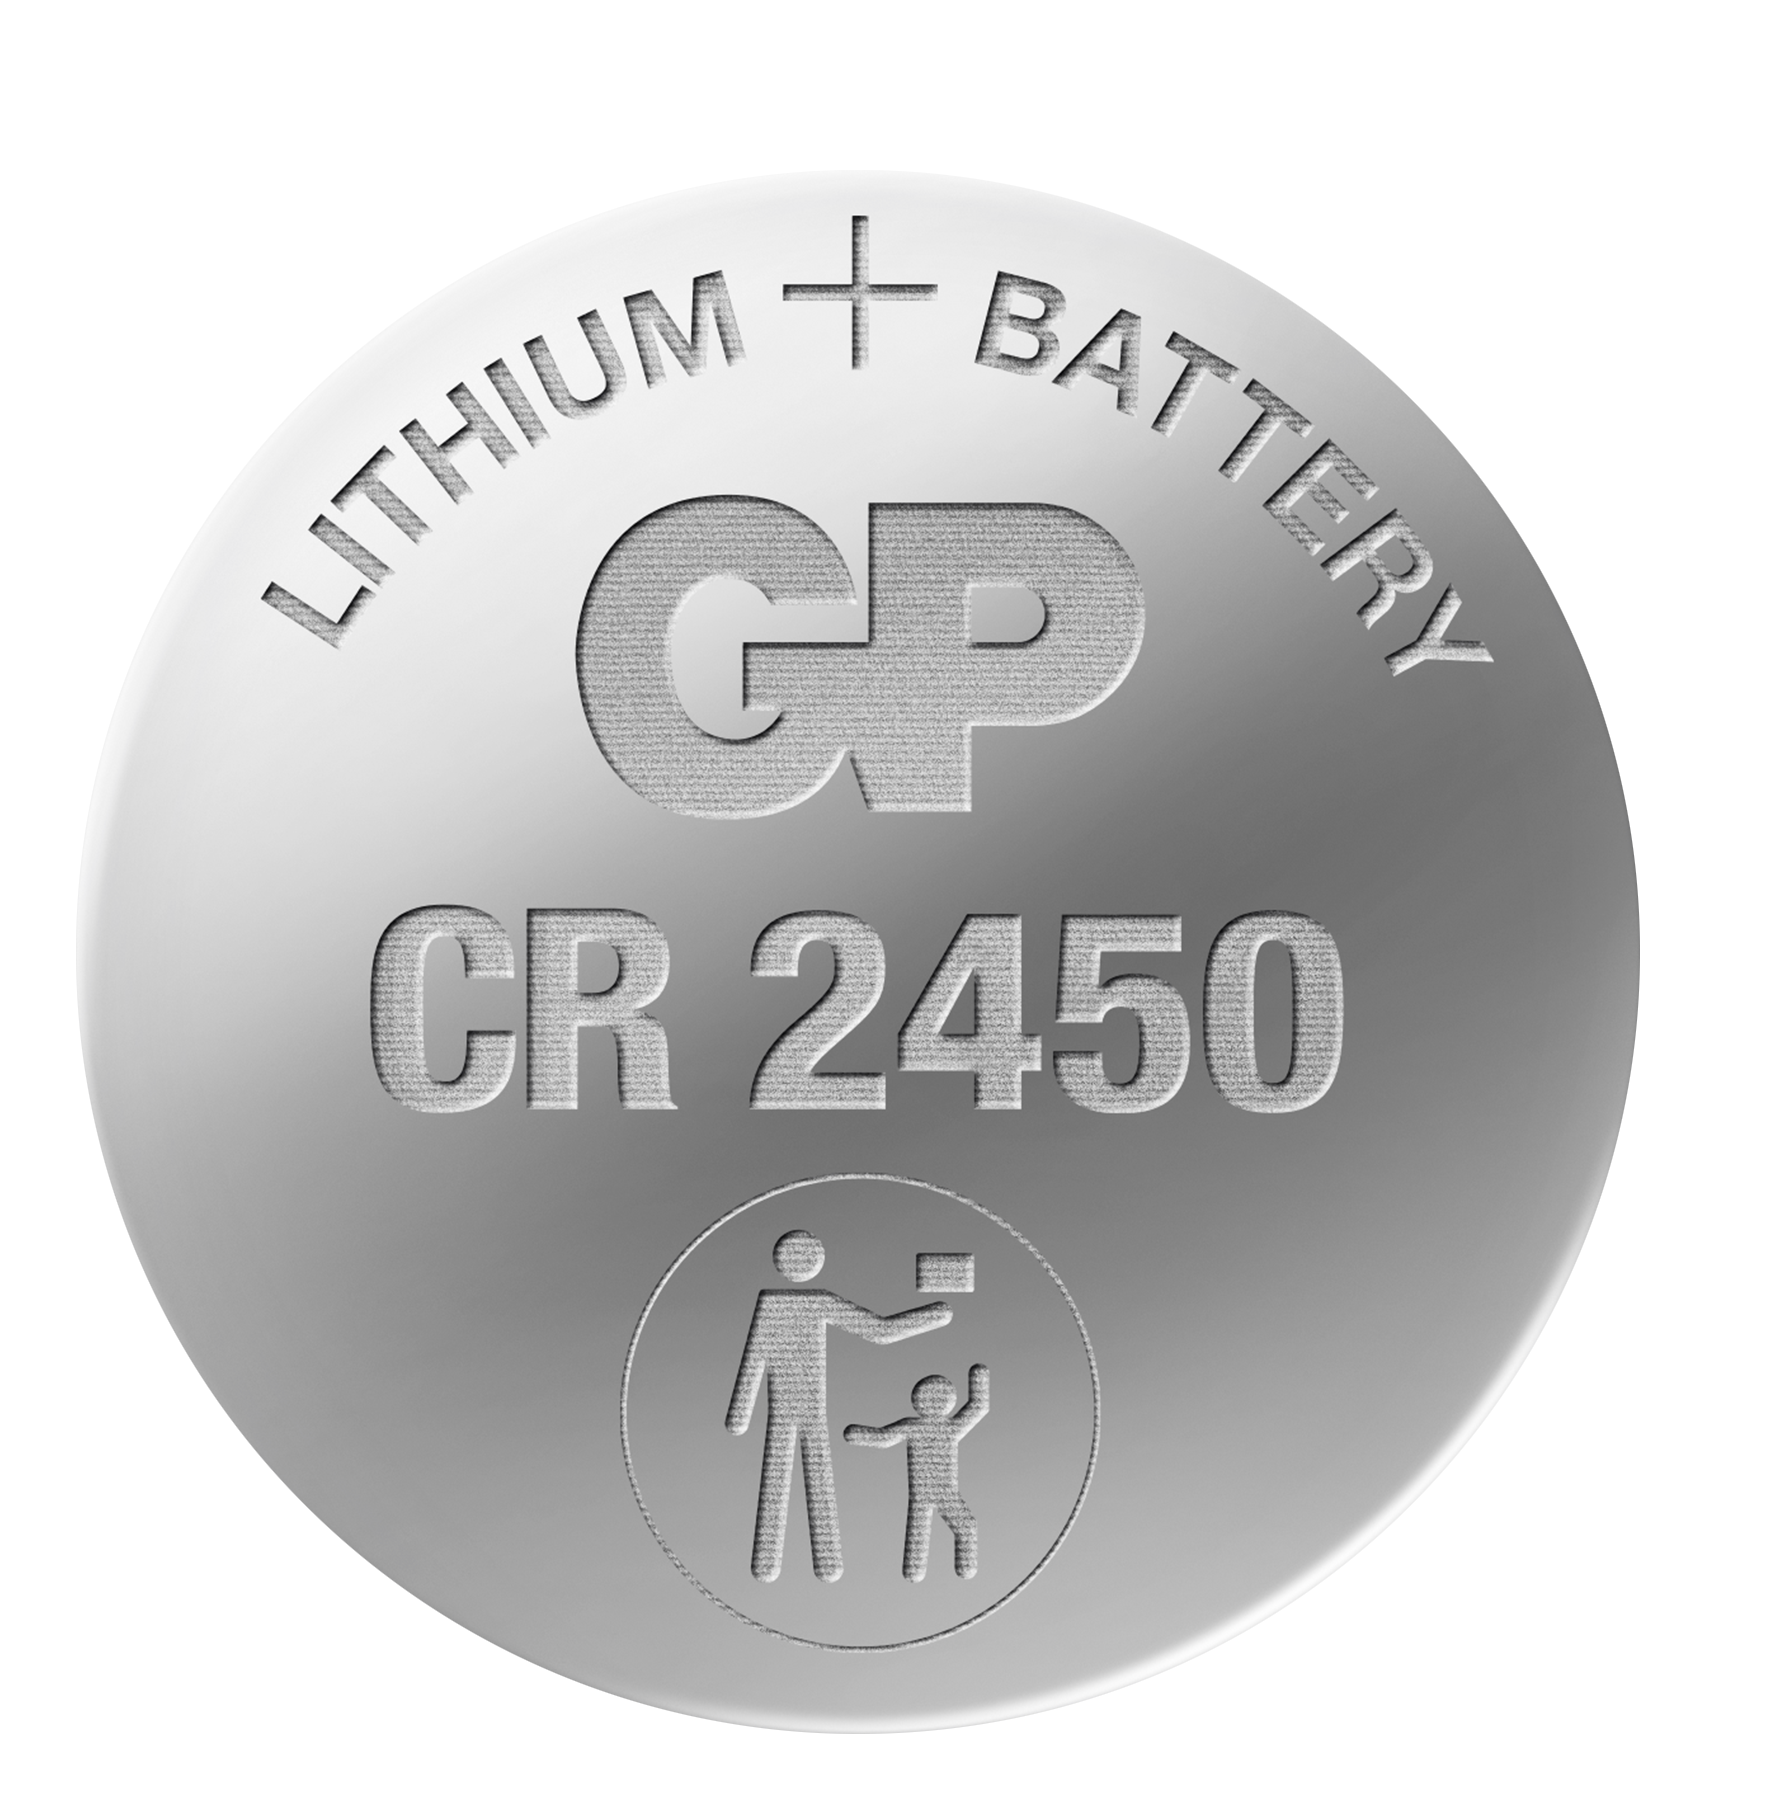 Pila de botón de litio CR2450